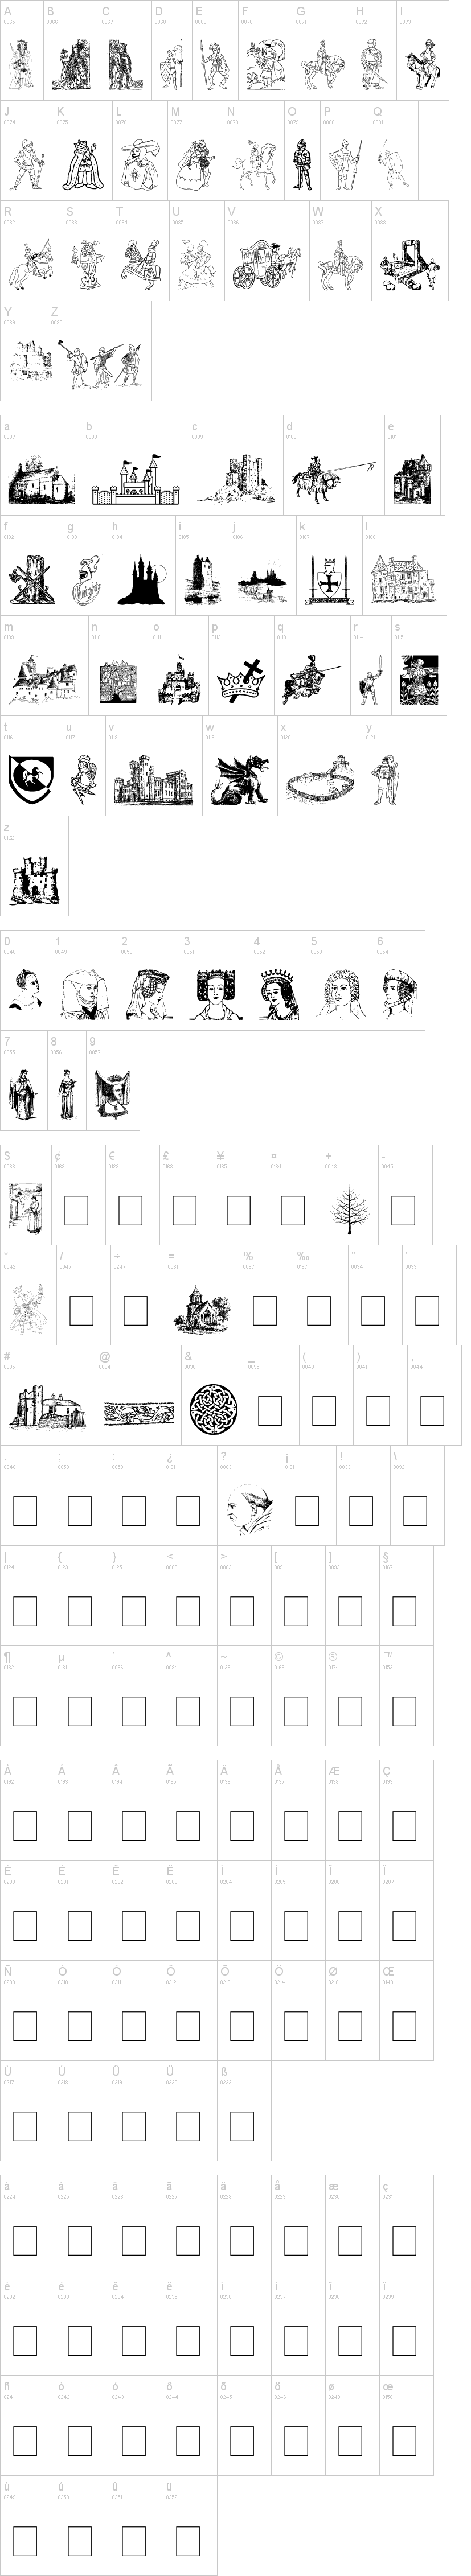 001 Medieval Daze字符映射图